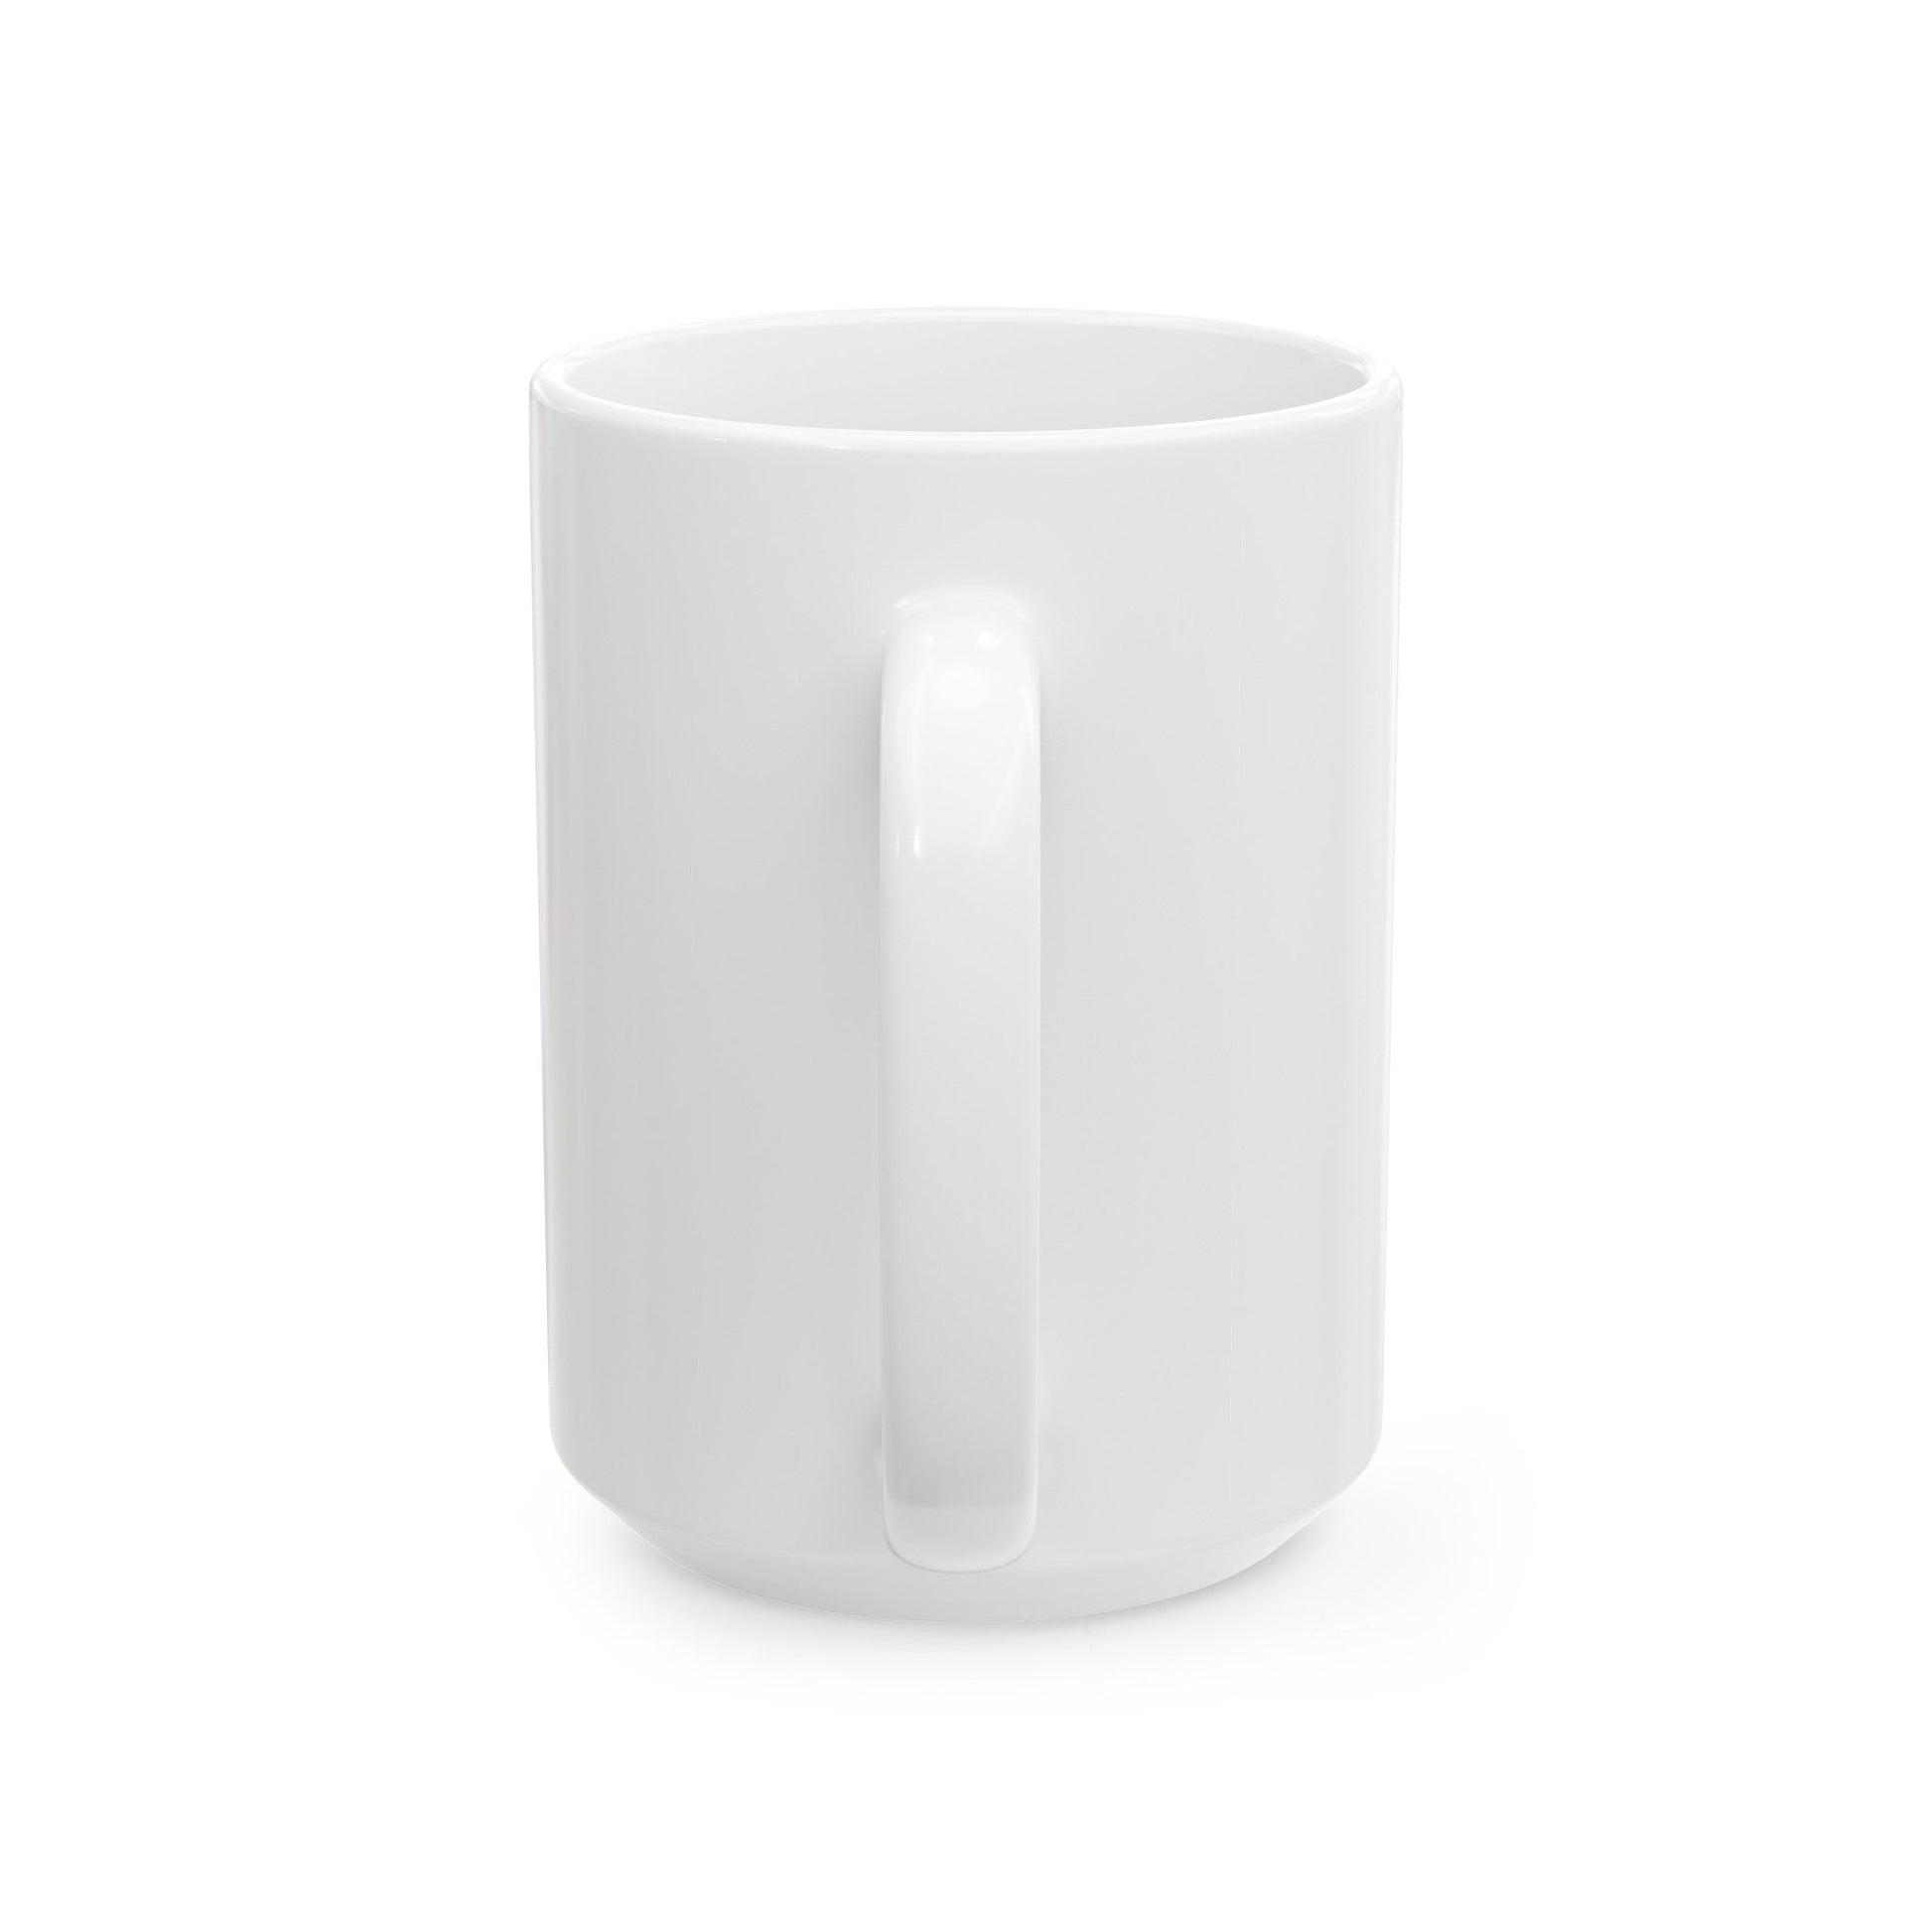 VCNO FLAG NO POLE. (U.S. Navy) White Coffee Mug-The Sticker Space